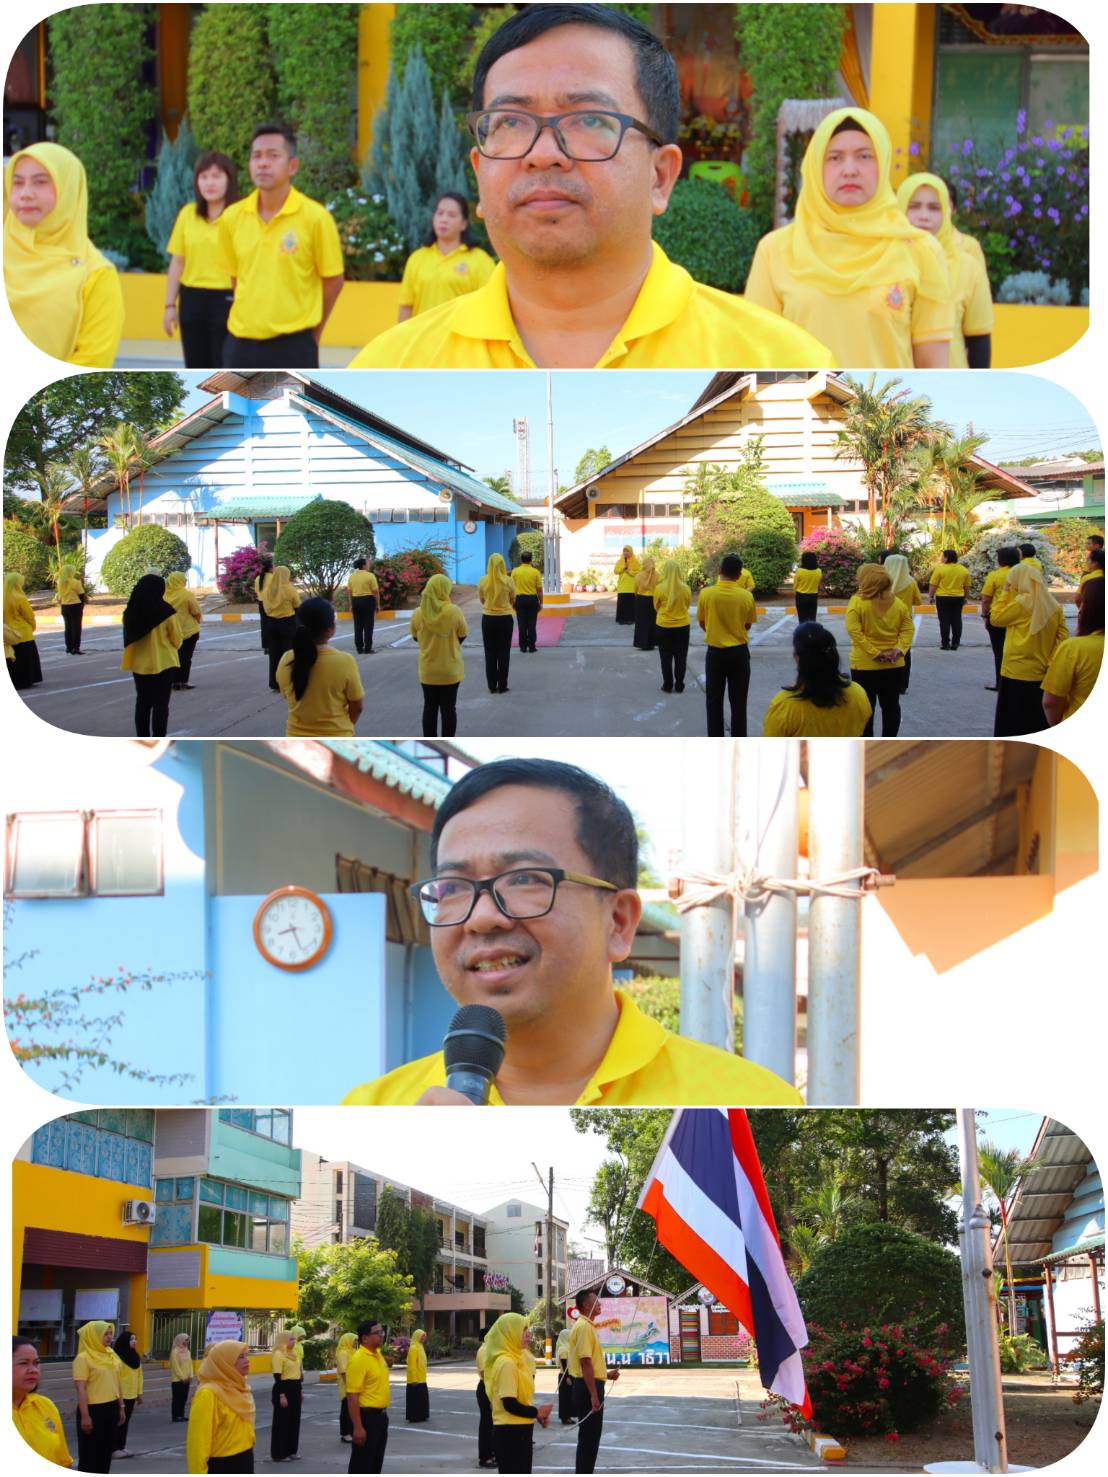 “บุคลากรศูนย์ส่งเสริมการเรียนรู้อำเภอเมืองนราธิวาสร่วมเคารพธงชาติเพื่อรัก หวงแหนคงความเป็นชาติไทย”